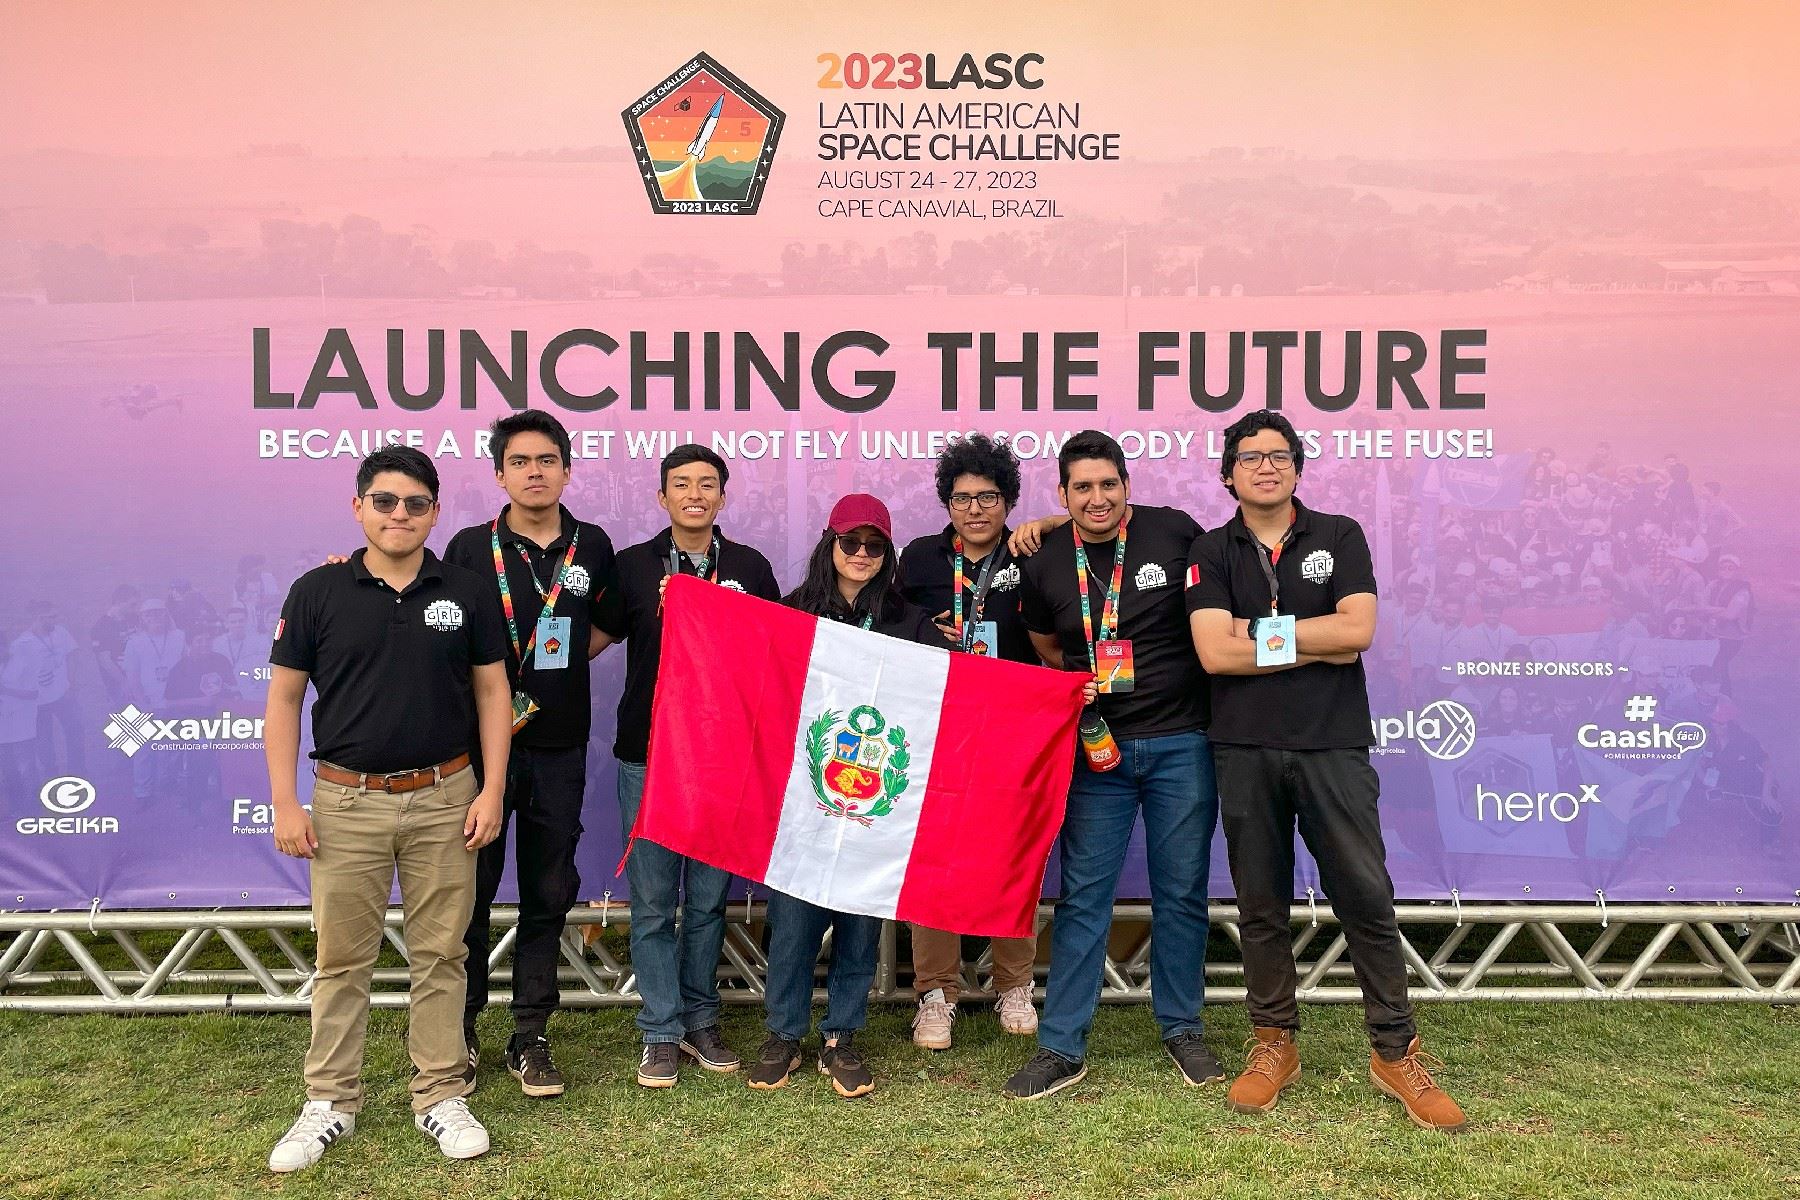 El equipo ChaskaSat logró el primer lugar en la subcategoría Cansat, así como en la categoría general de satélites del concurso LASC 2023.